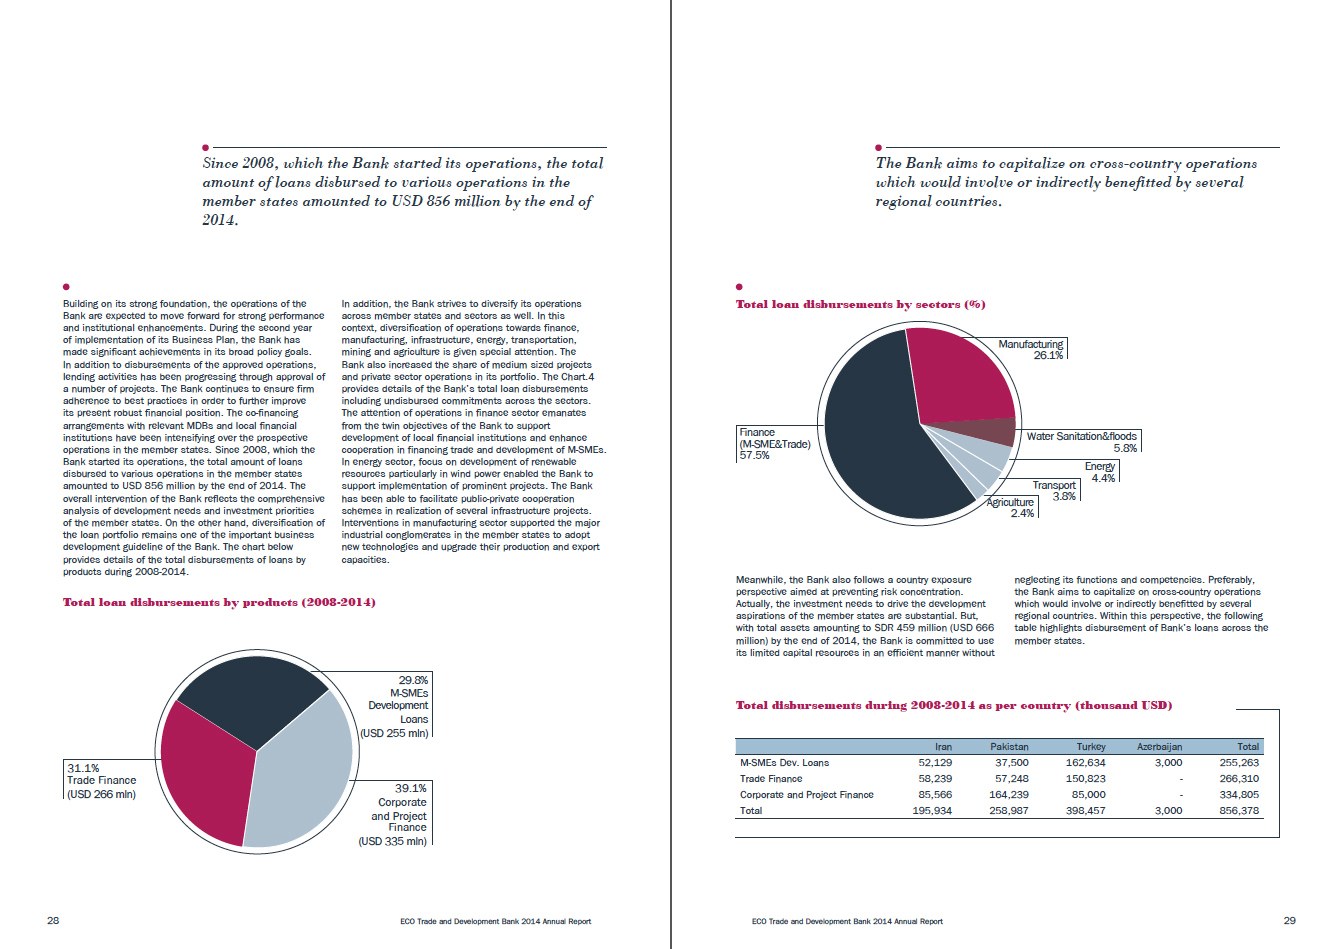 ECO BANK / 2014 Faaliyet Raporu / 2014 Annual Report